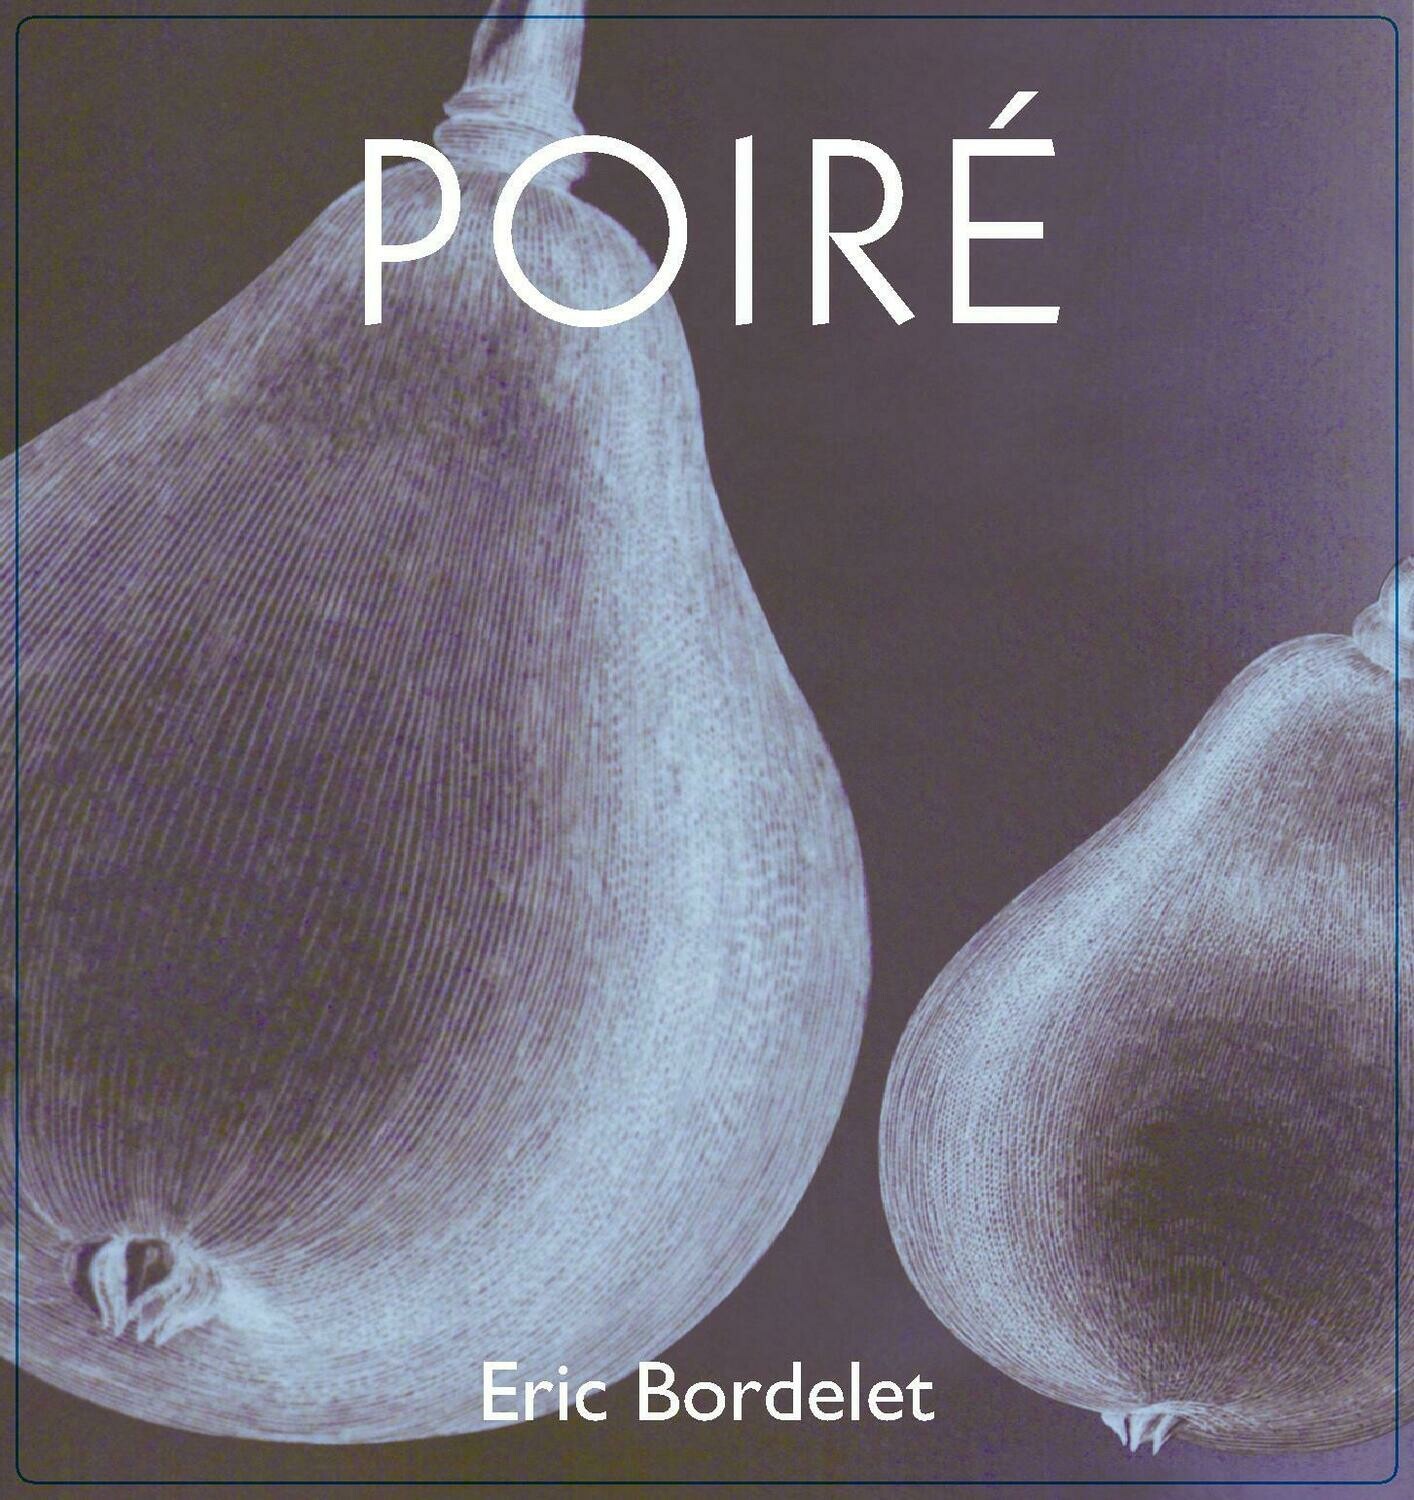 2021 Eric Bordelet Poire Sparkling Pear Cider 330 ml